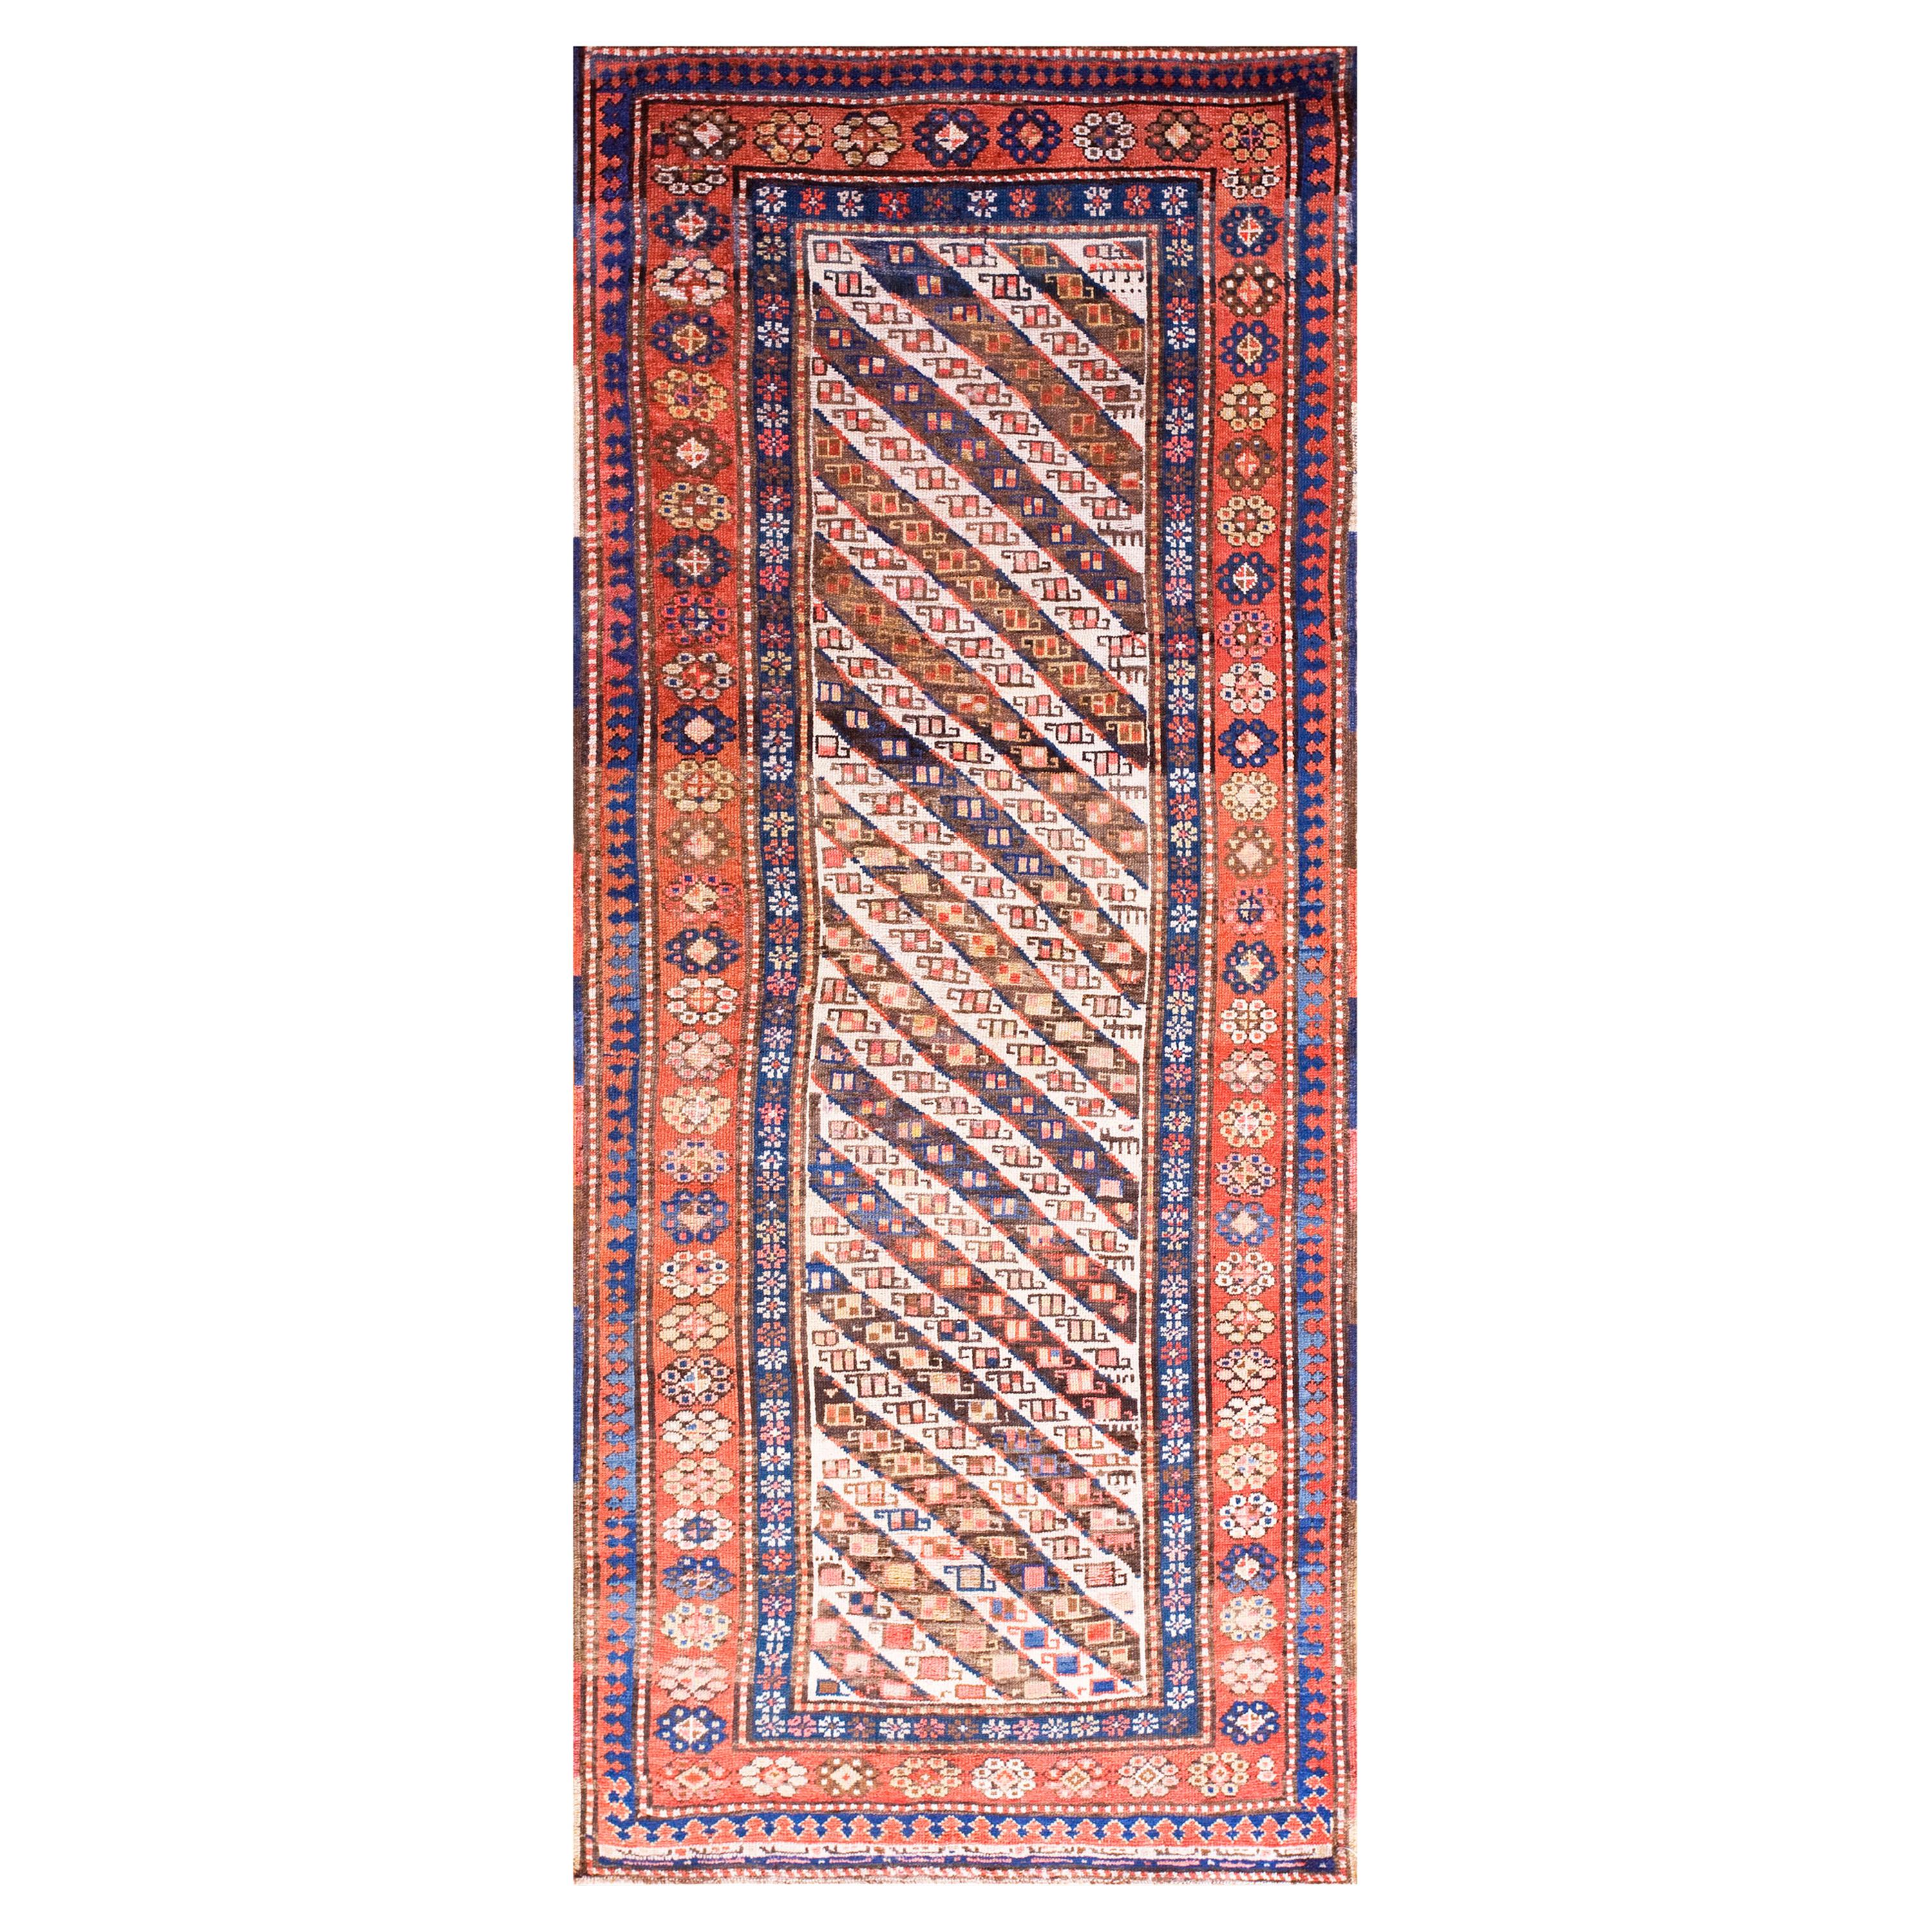 19th Century Caucasian Ganjeh Carpet ( 3'6" x 8'4" - 106 x 254 )